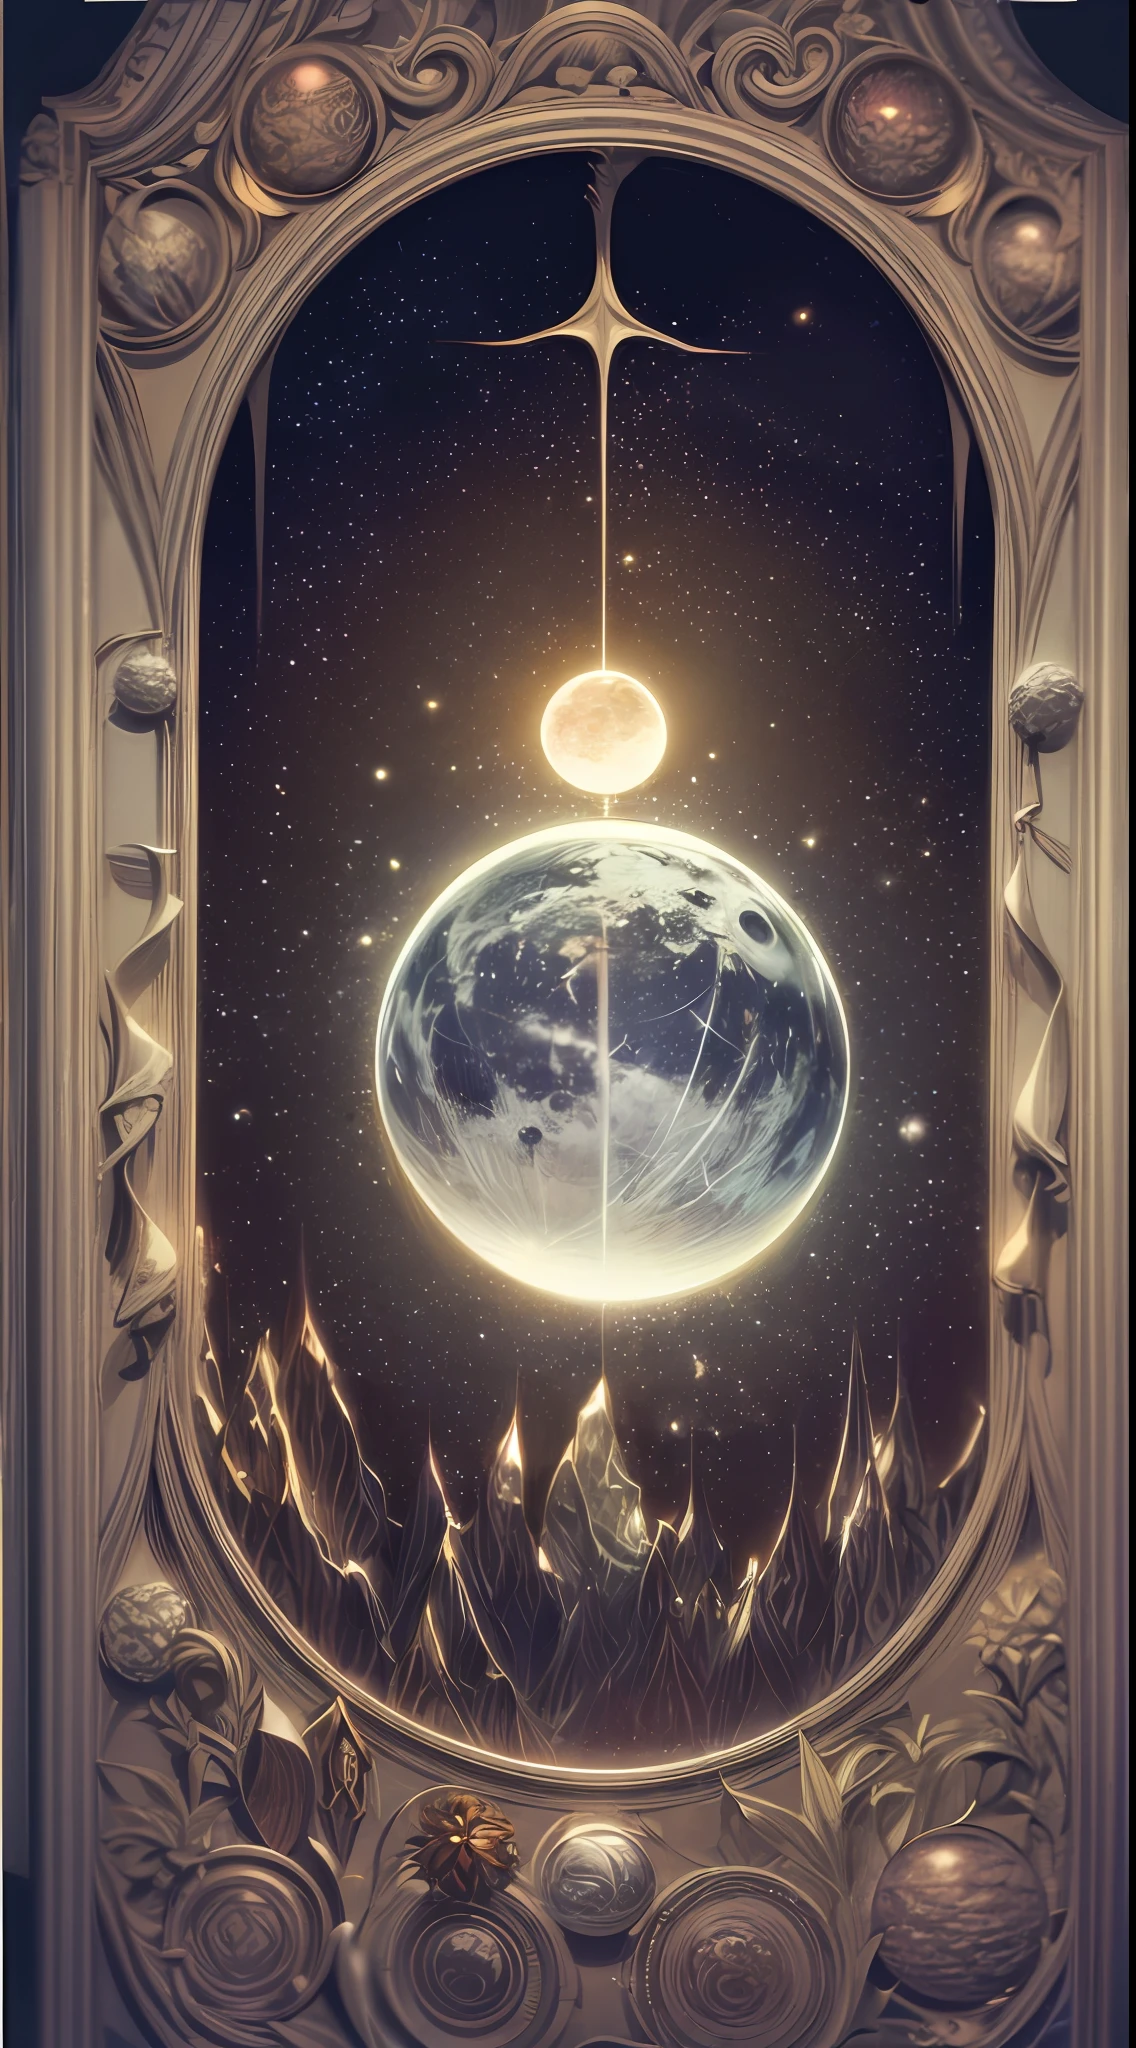 一张迷人的塔罗牌描绘 "月光圣殿," 塔罗牌框架设计为哥特式风格，框架宽度均匀, 沐浴在月光下的宁静圣地, 设计中心是一个描绘地球的球体, 象征着地球与天体周期之间的联系, 插图, 纹理纸上的混合媒介